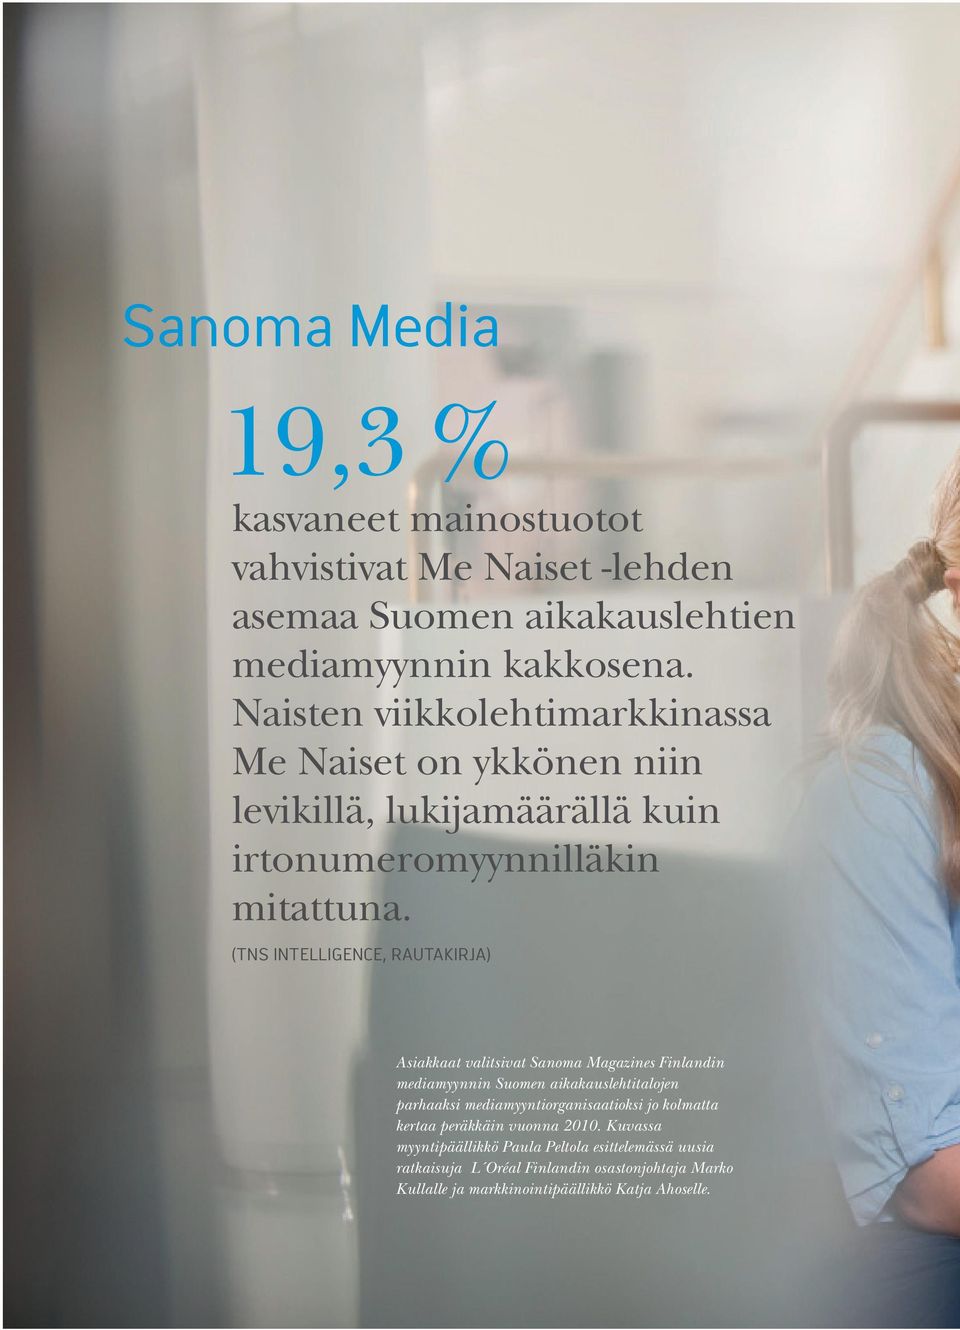 (TNS INTELLIGENCE, RAUTAKIRJA) Asiakkaat valitsivat Sanoma Magazines Finlandin mediamyynnin Suomen aikakauslehtitalojen parhaaksi